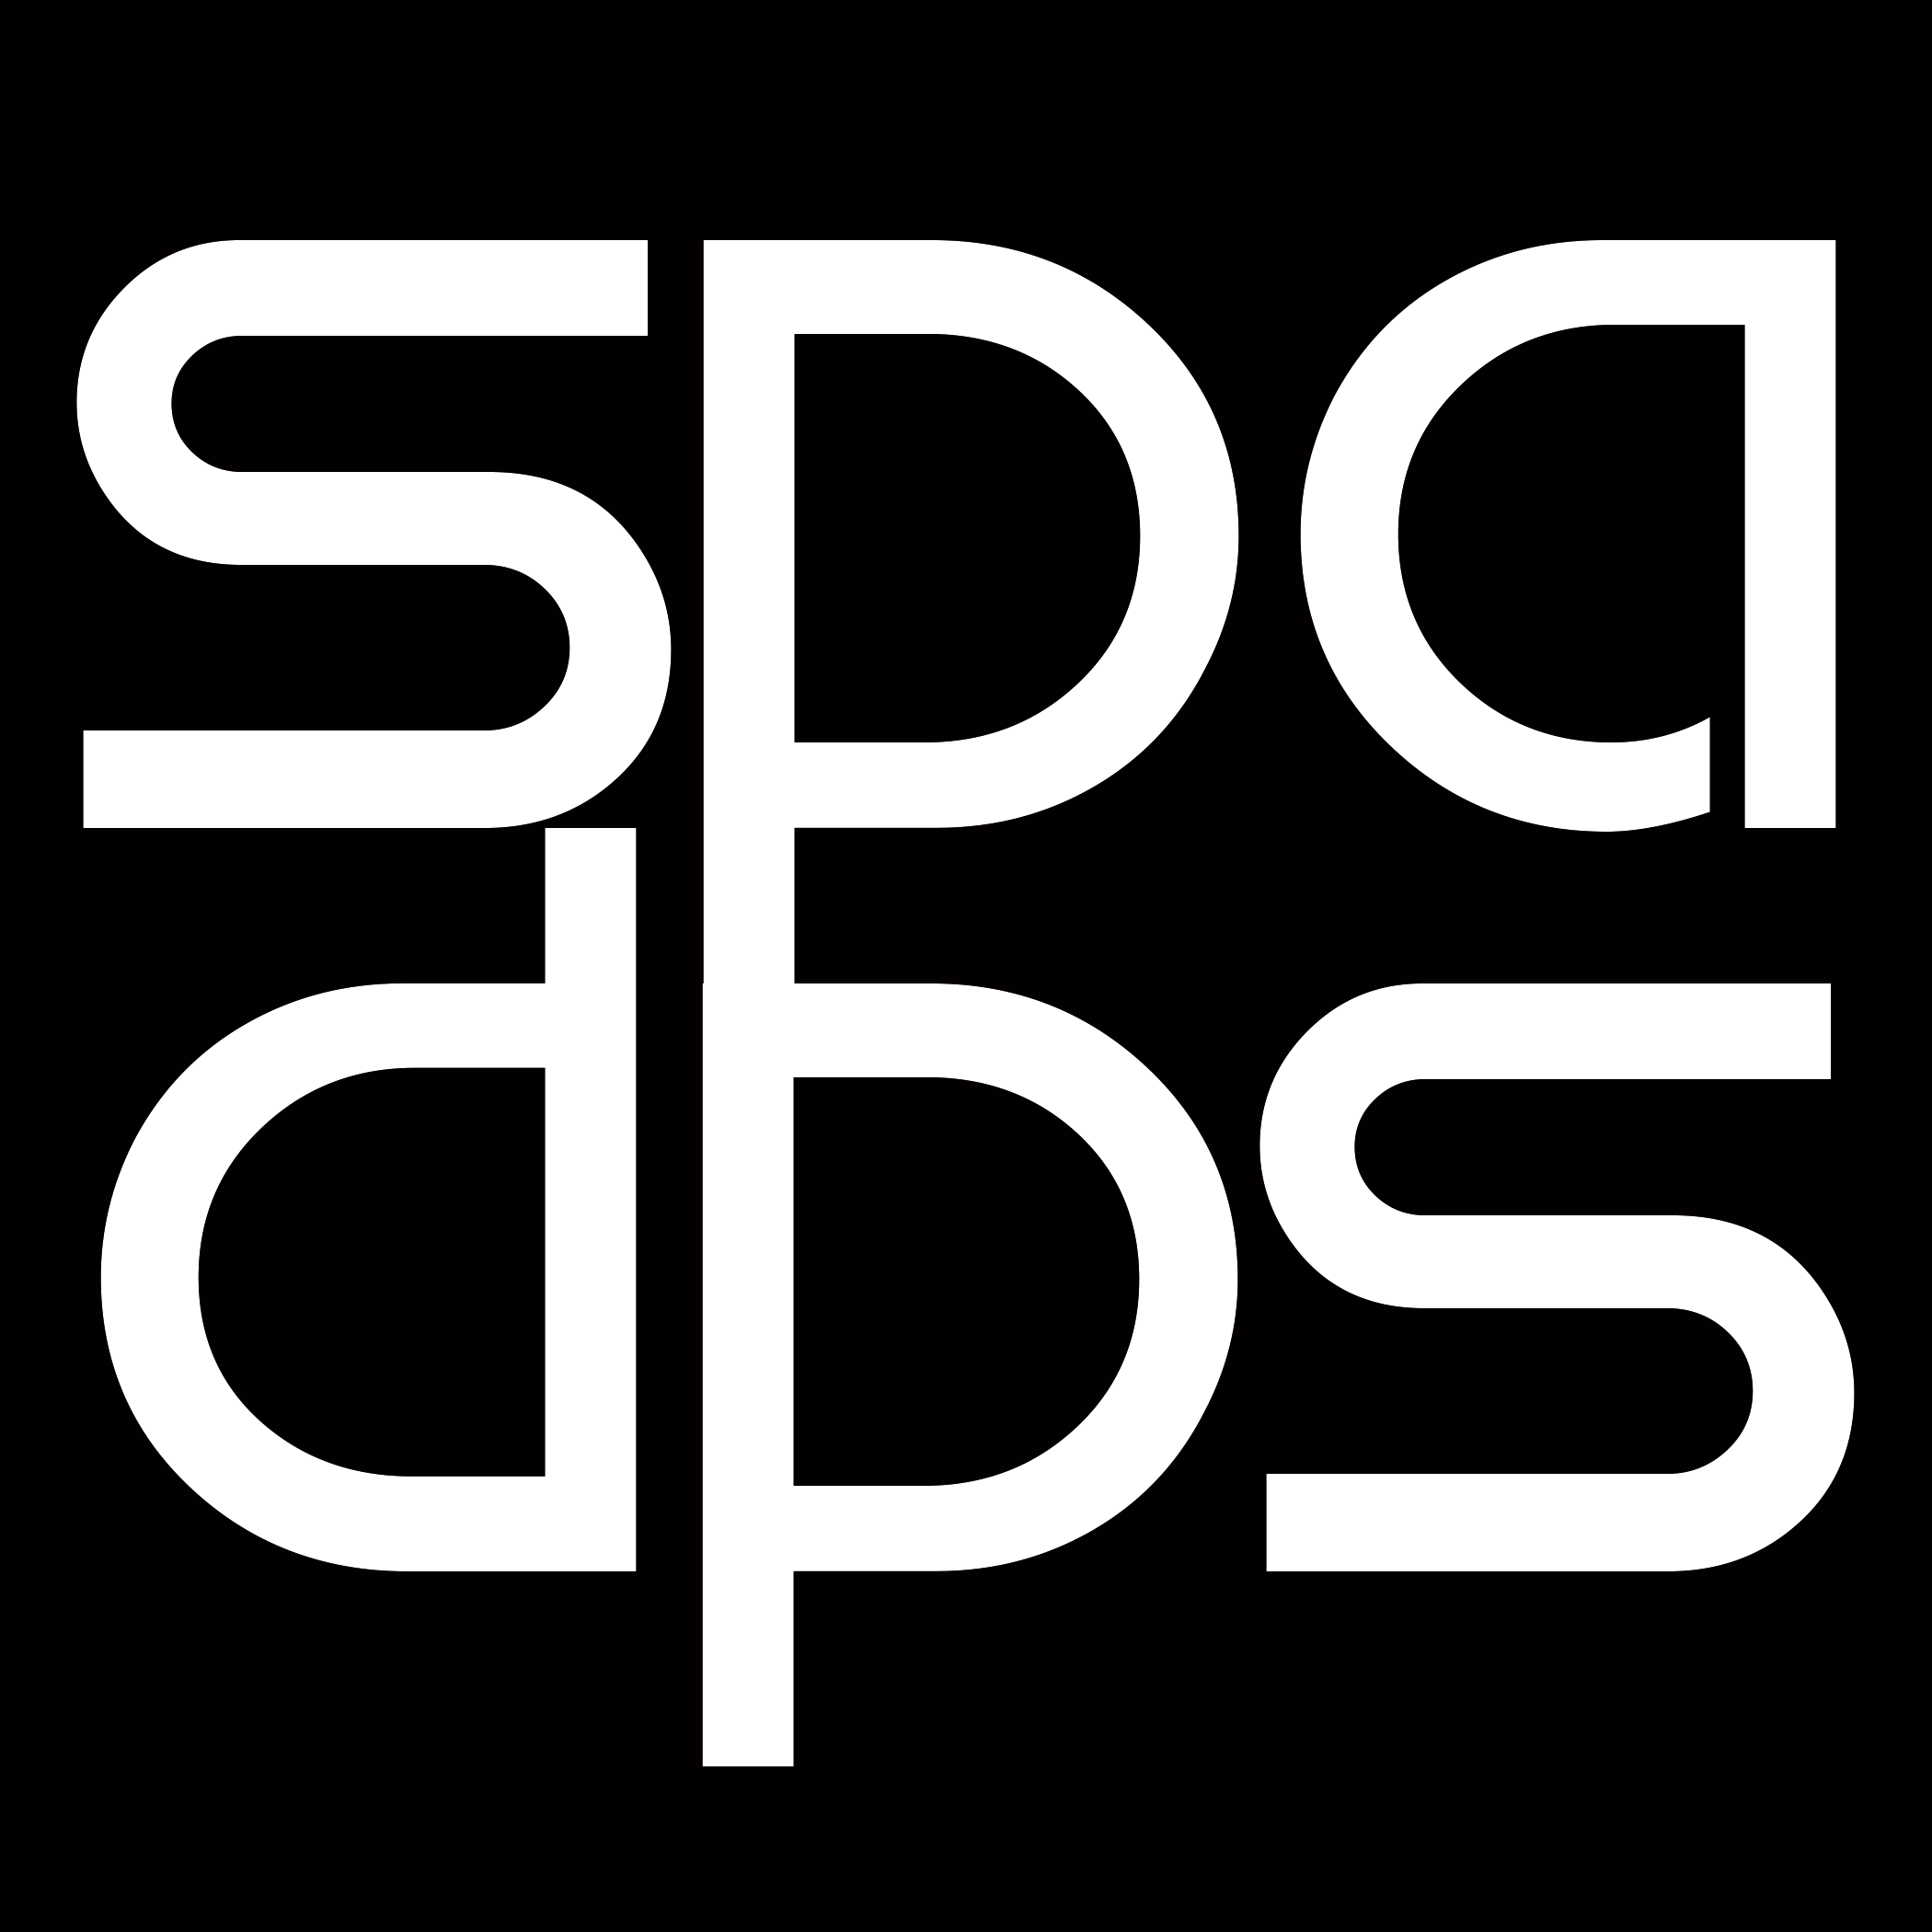 SPA Design